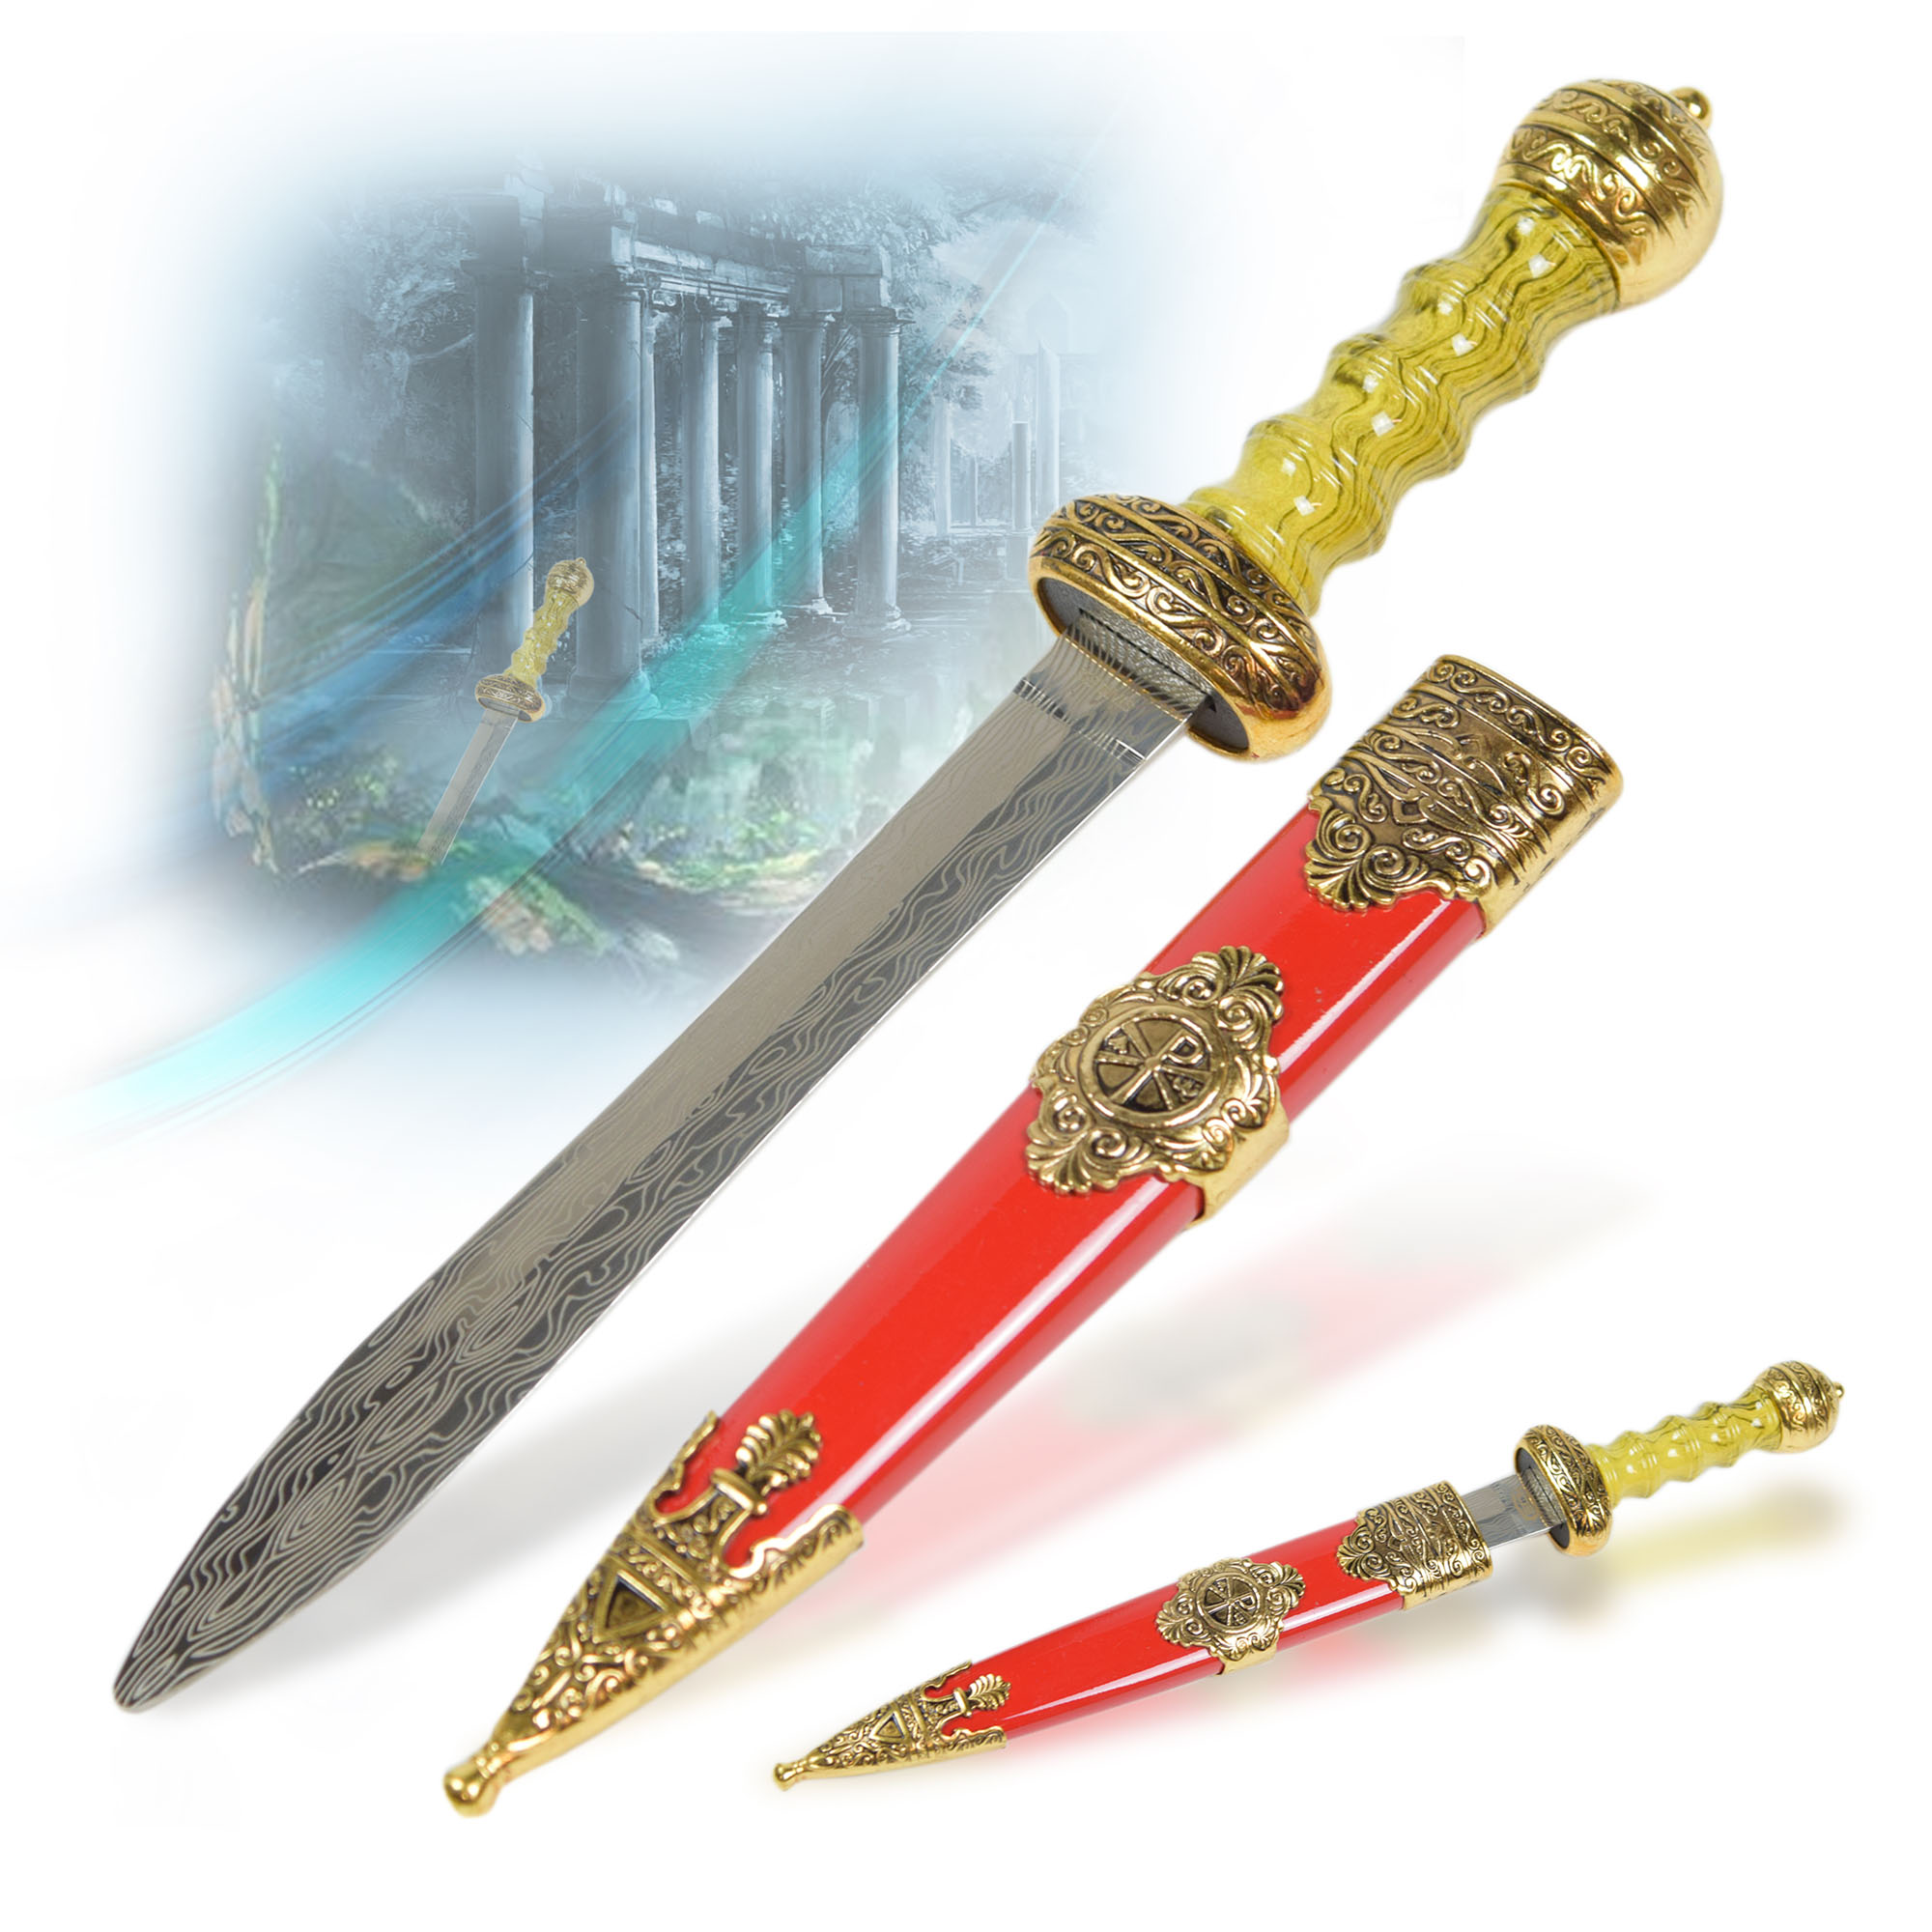 Roman Gladius - Miniature Sword, Gold version